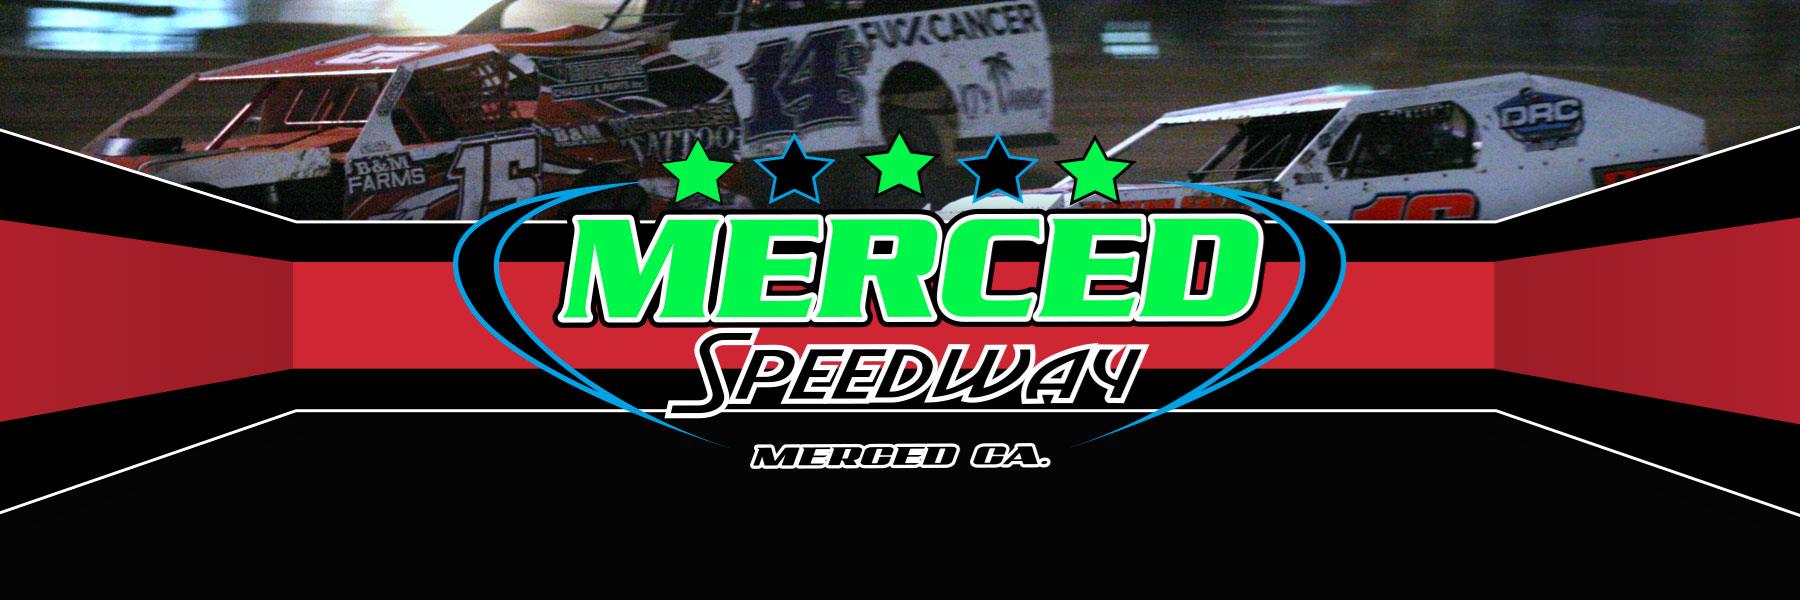 5/3/2021 - Merced Speedway